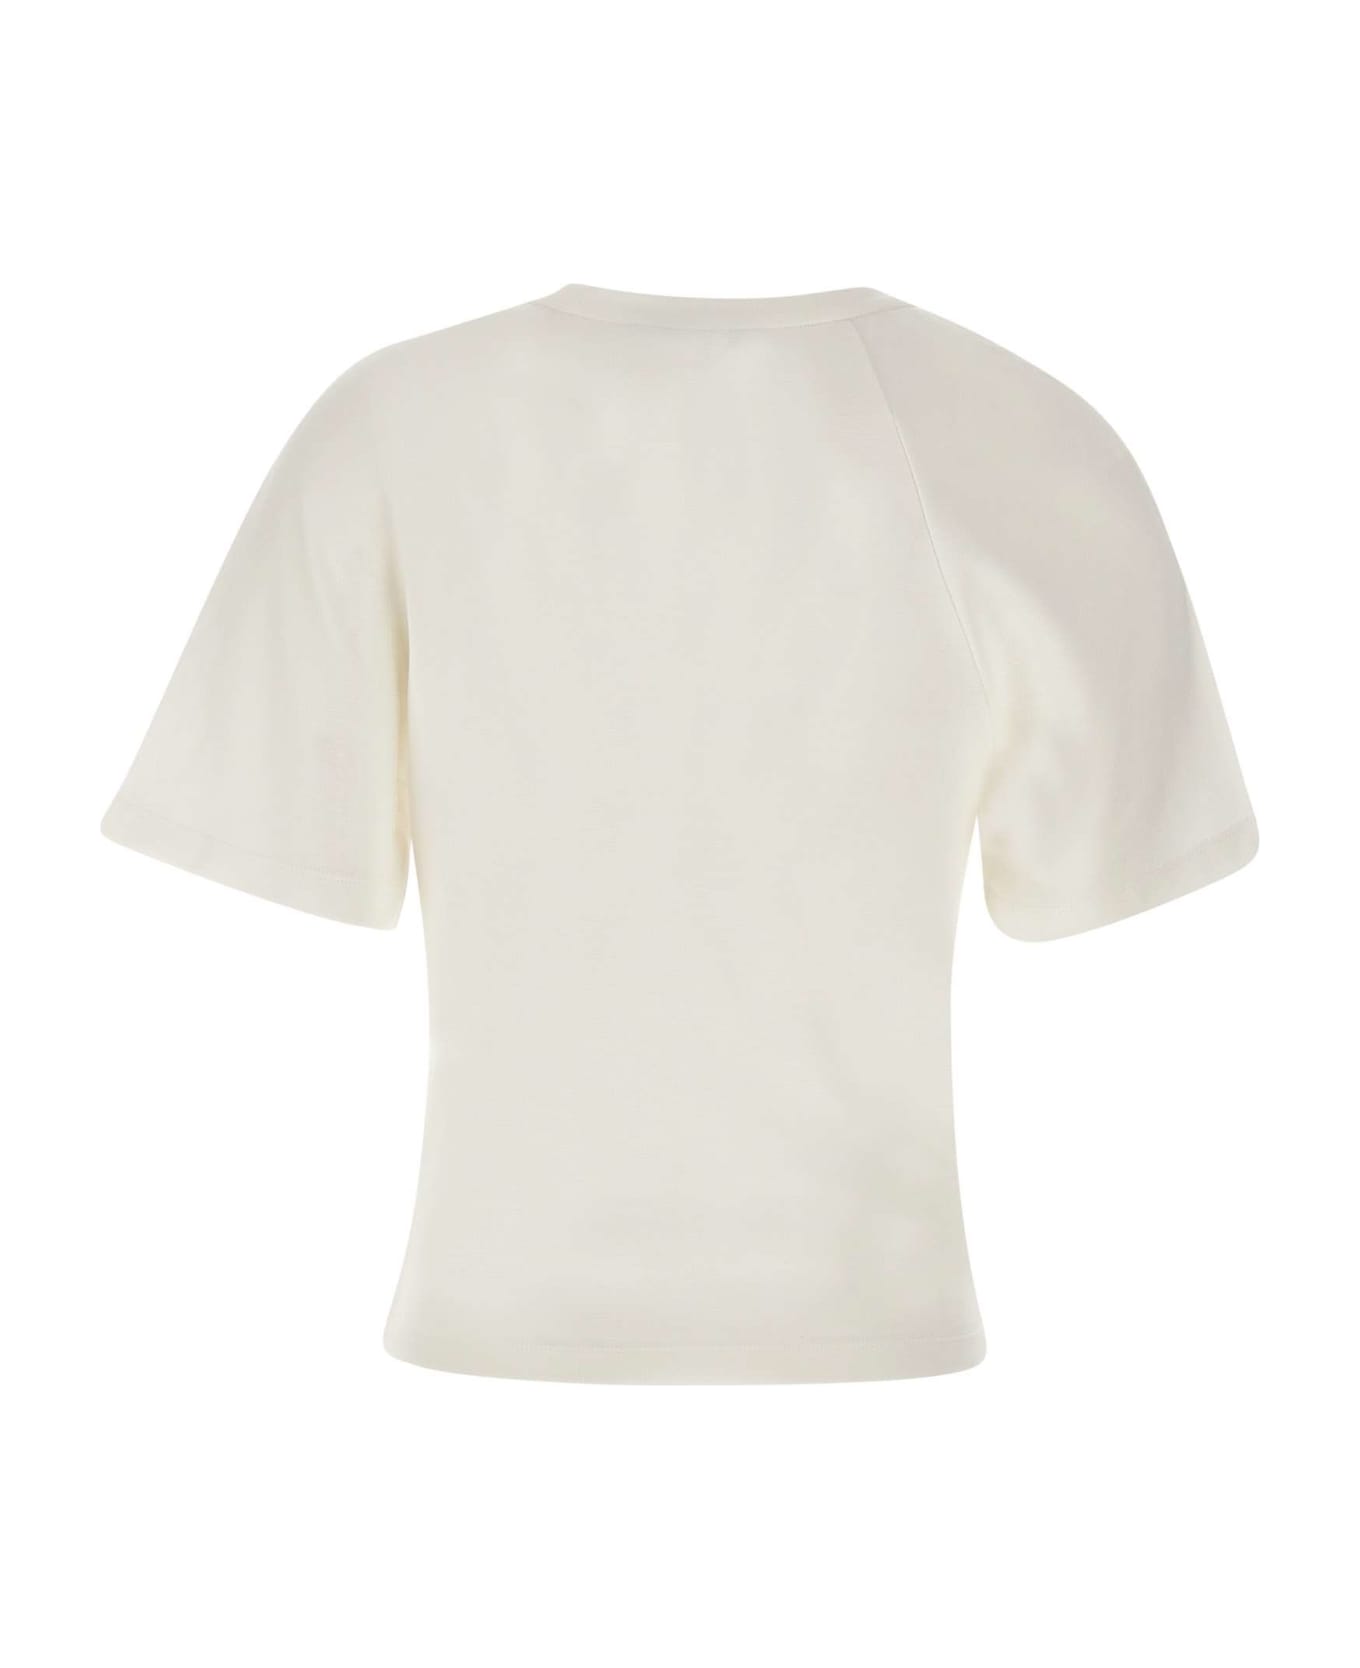 IRO "umae" Cotton T-shirt - WHITE Tシャツ